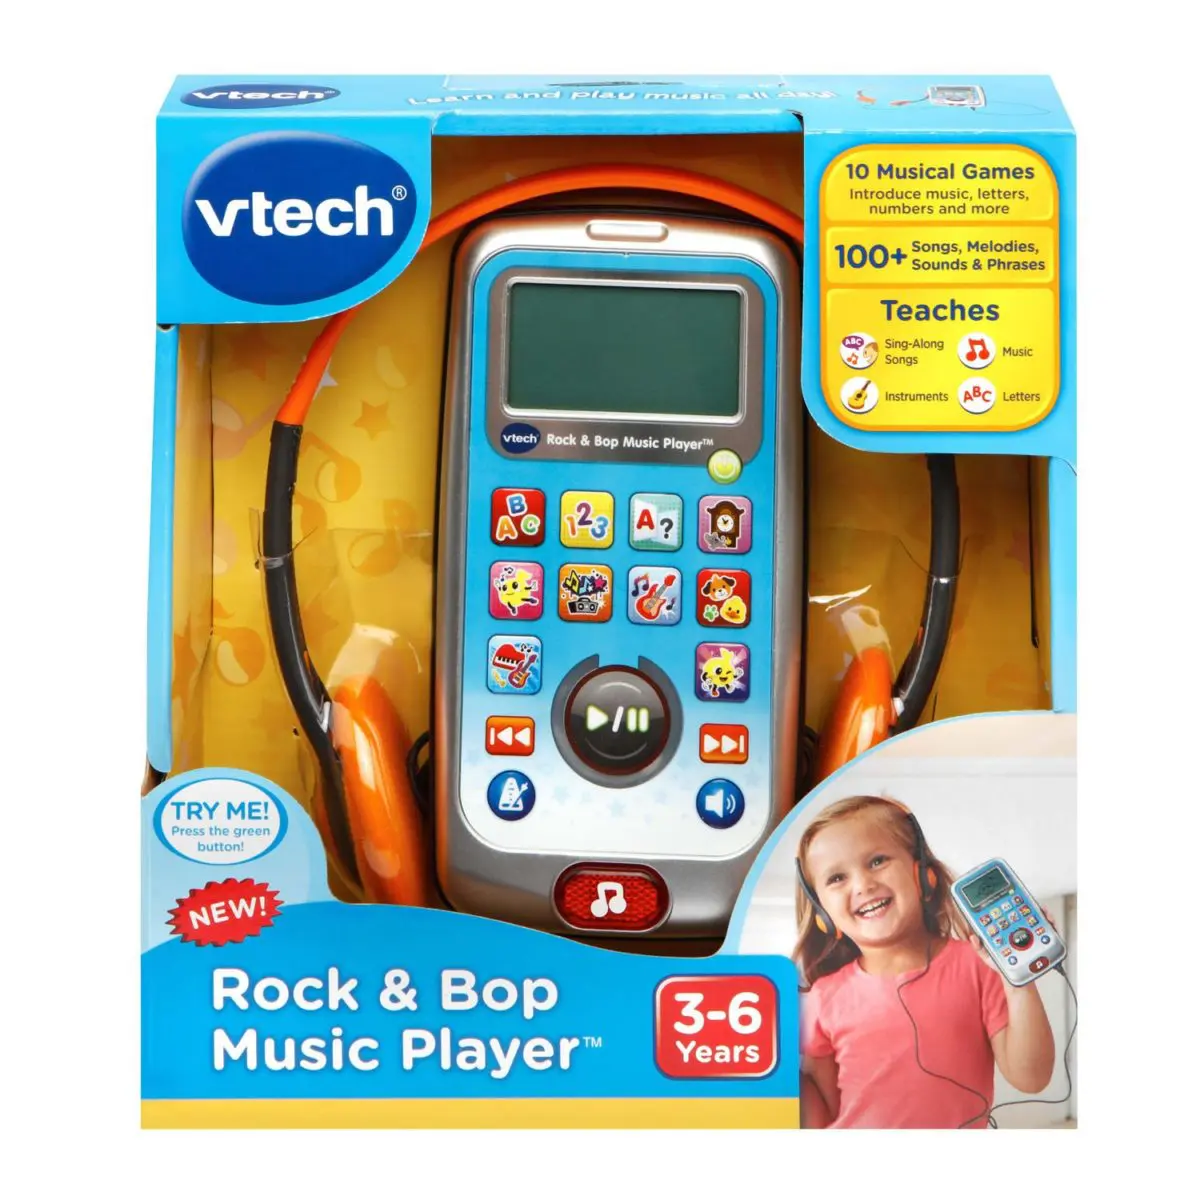 VTech-Rock-Bop-Music-Player1